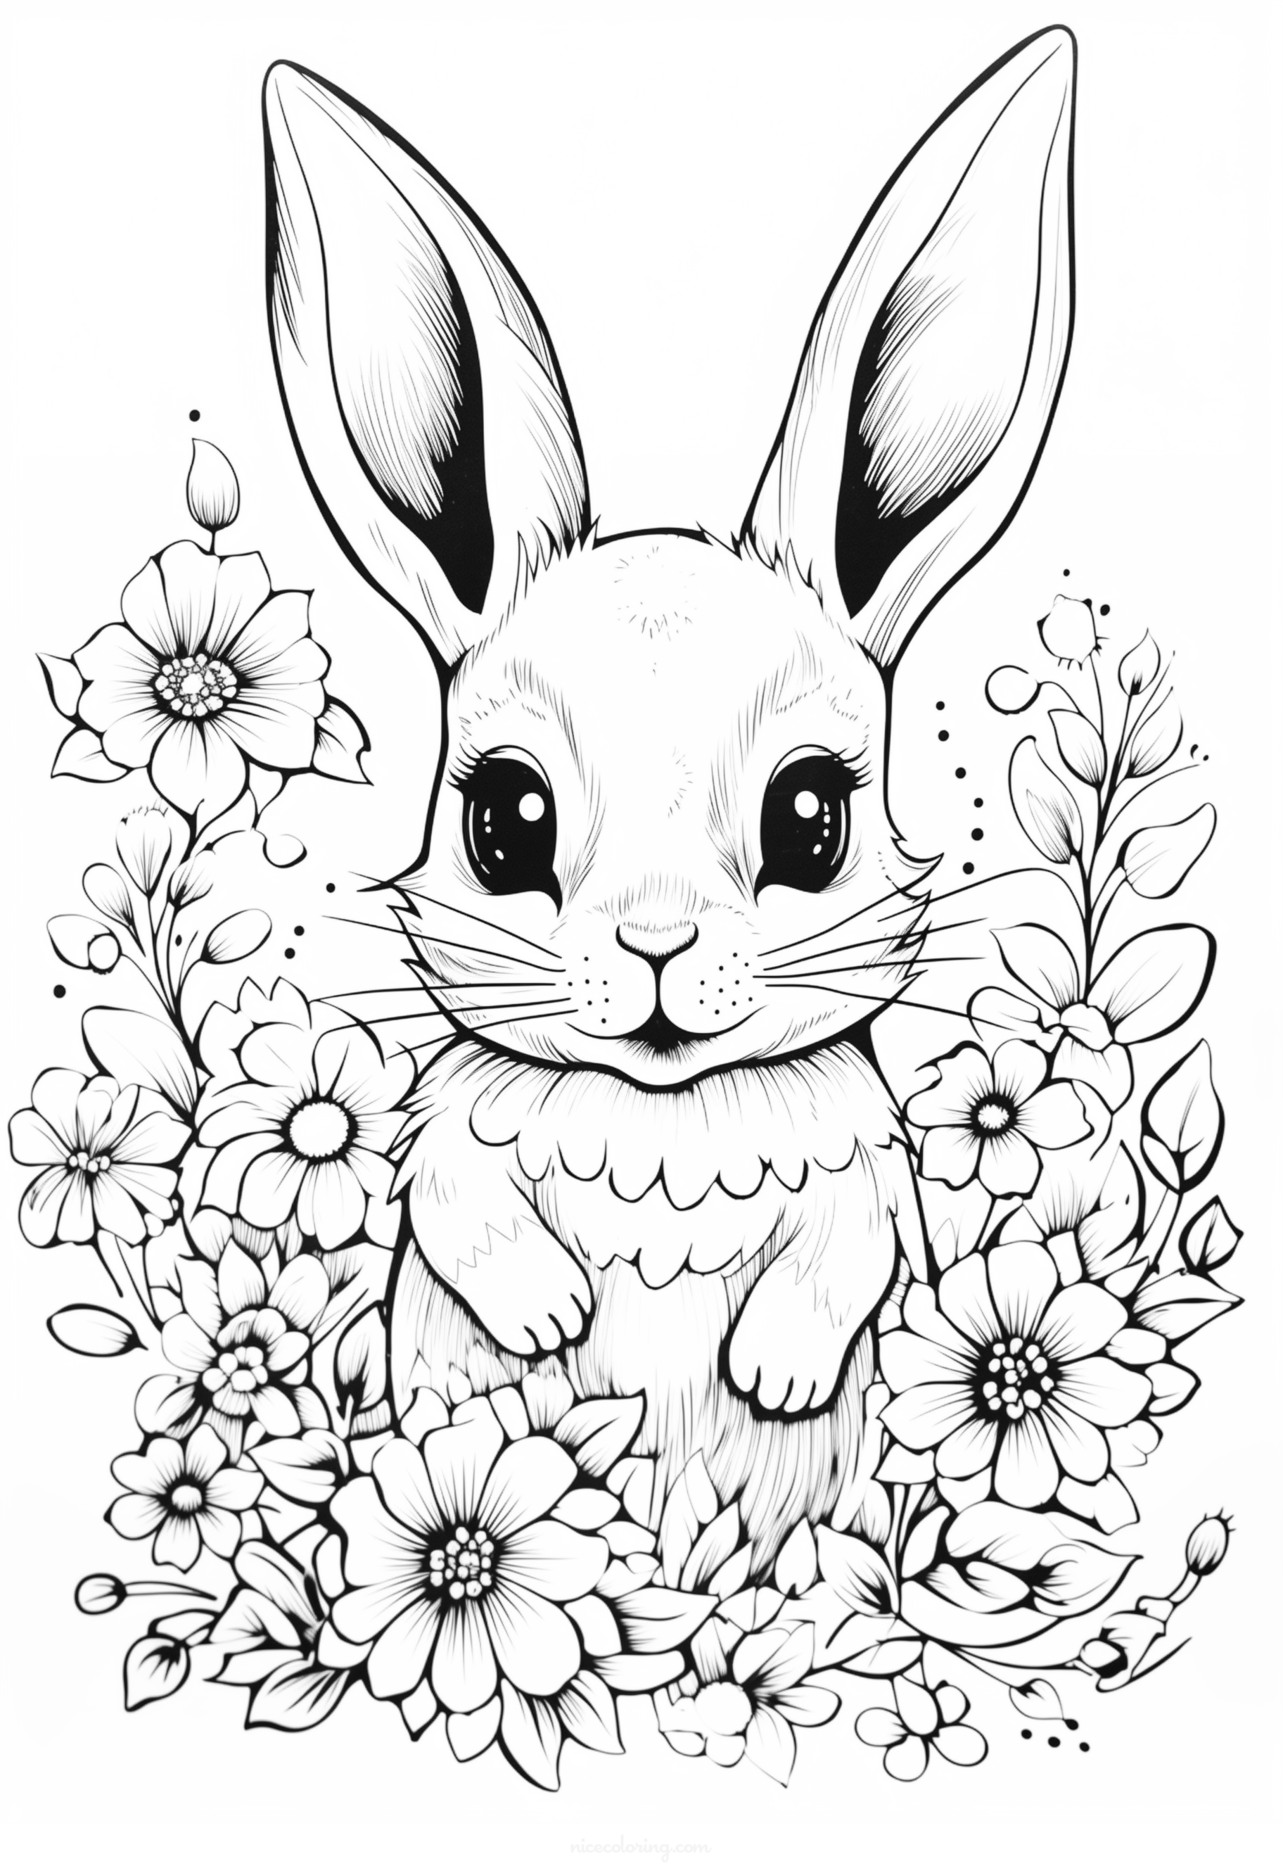 Кролик играет в саду, полном цветов